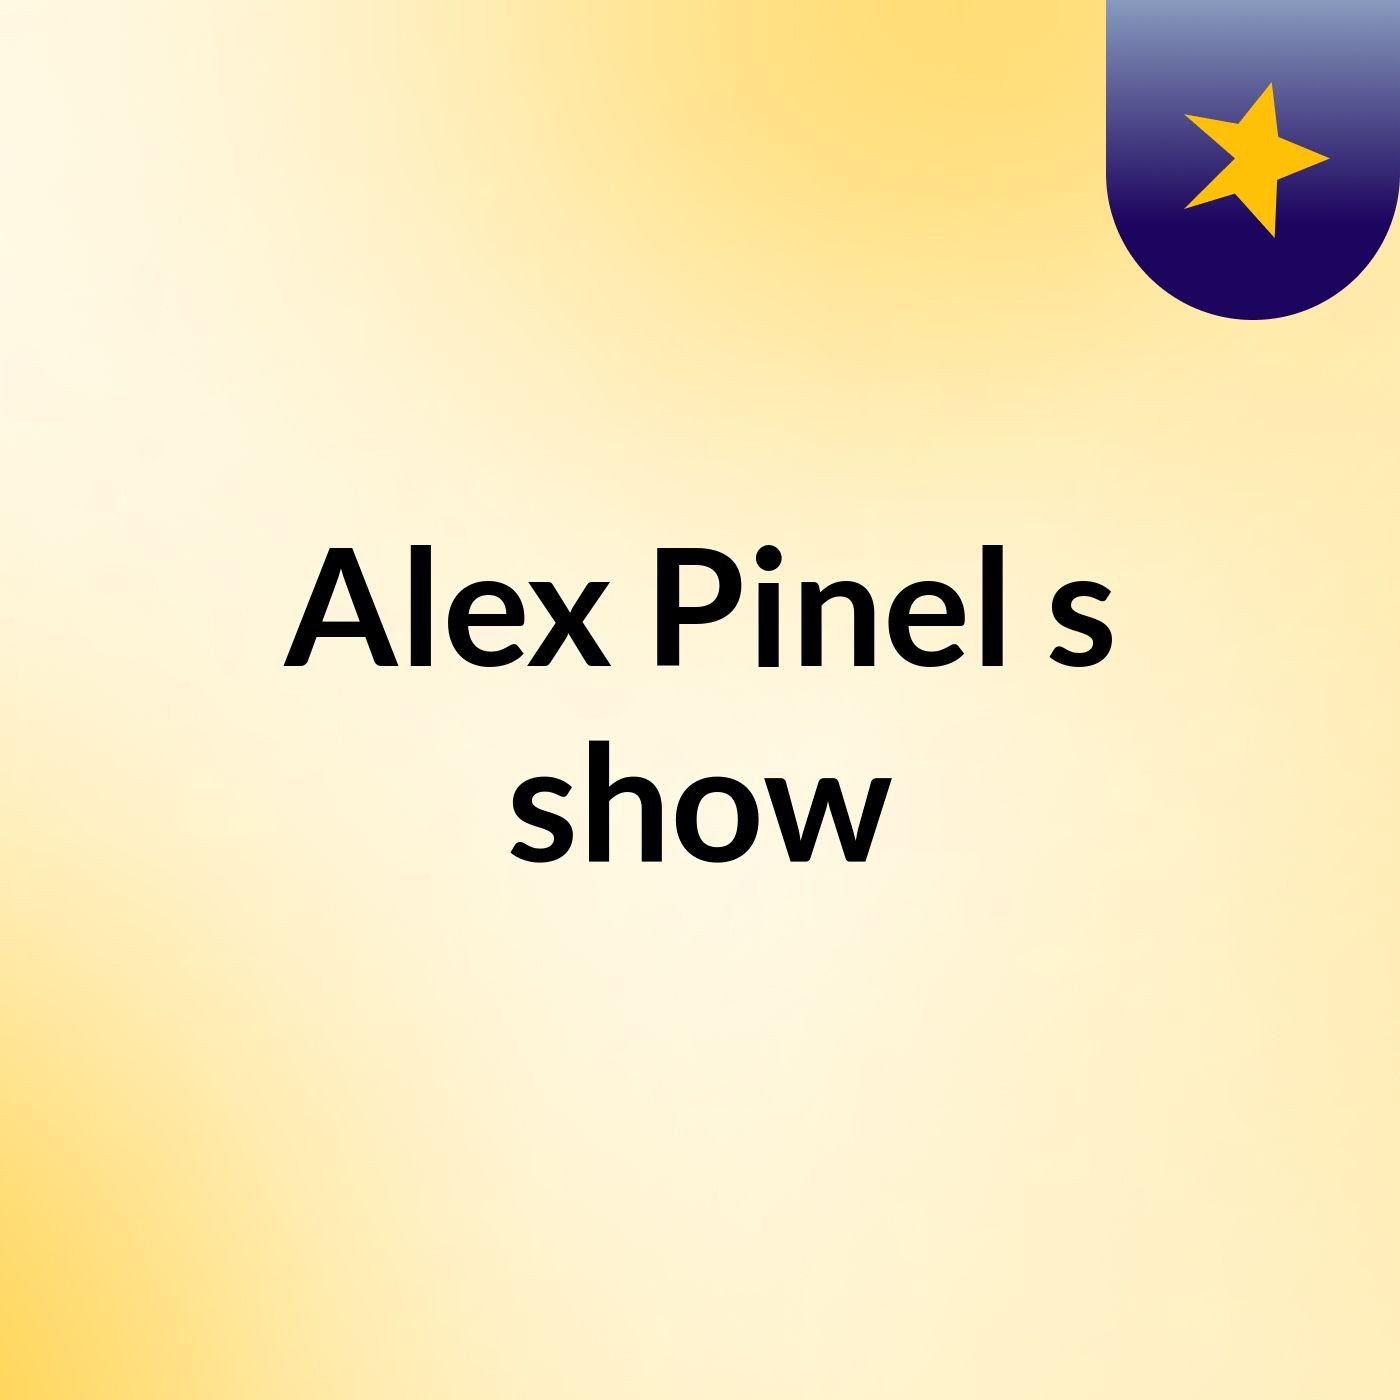 Alex Pinel's show